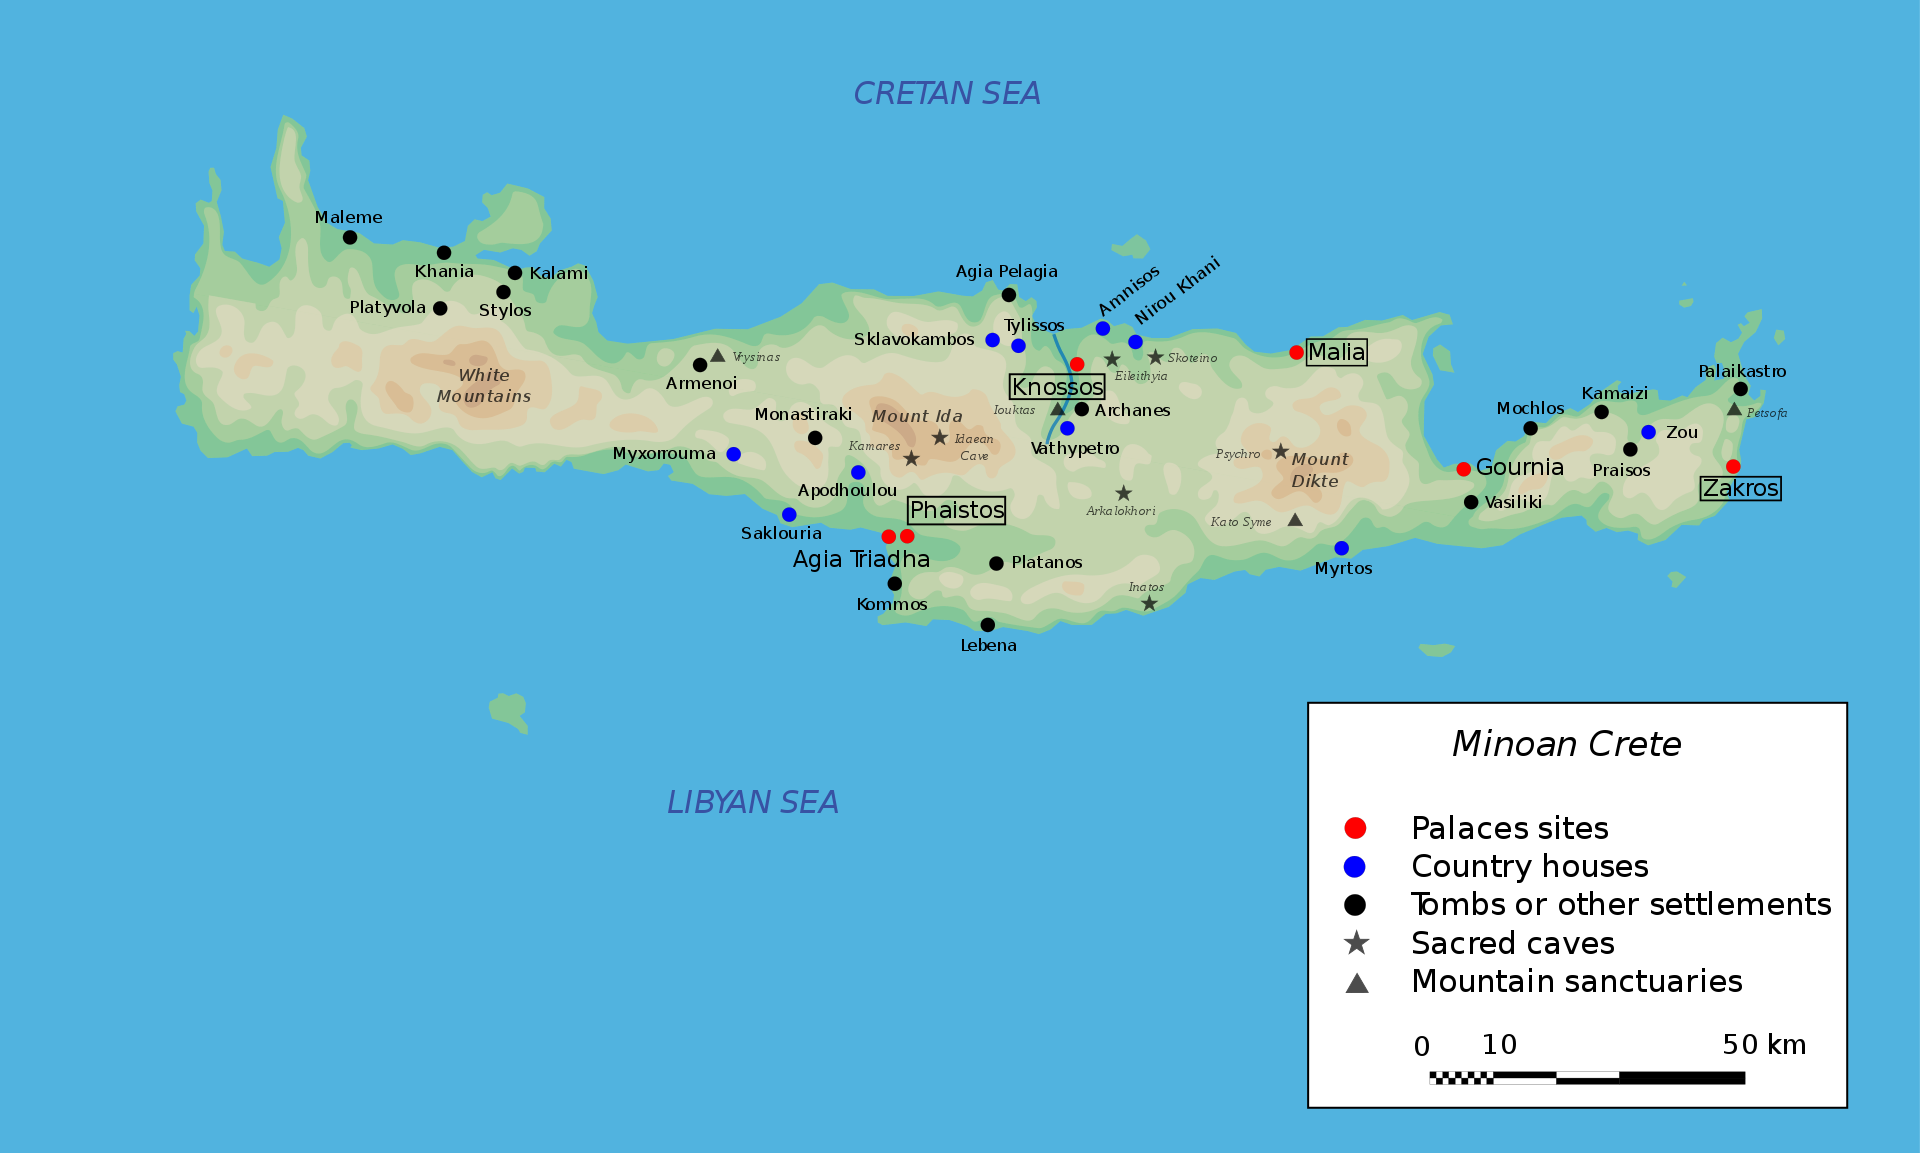 https://en.wikipedia.org/wiki/Minoan_civilization